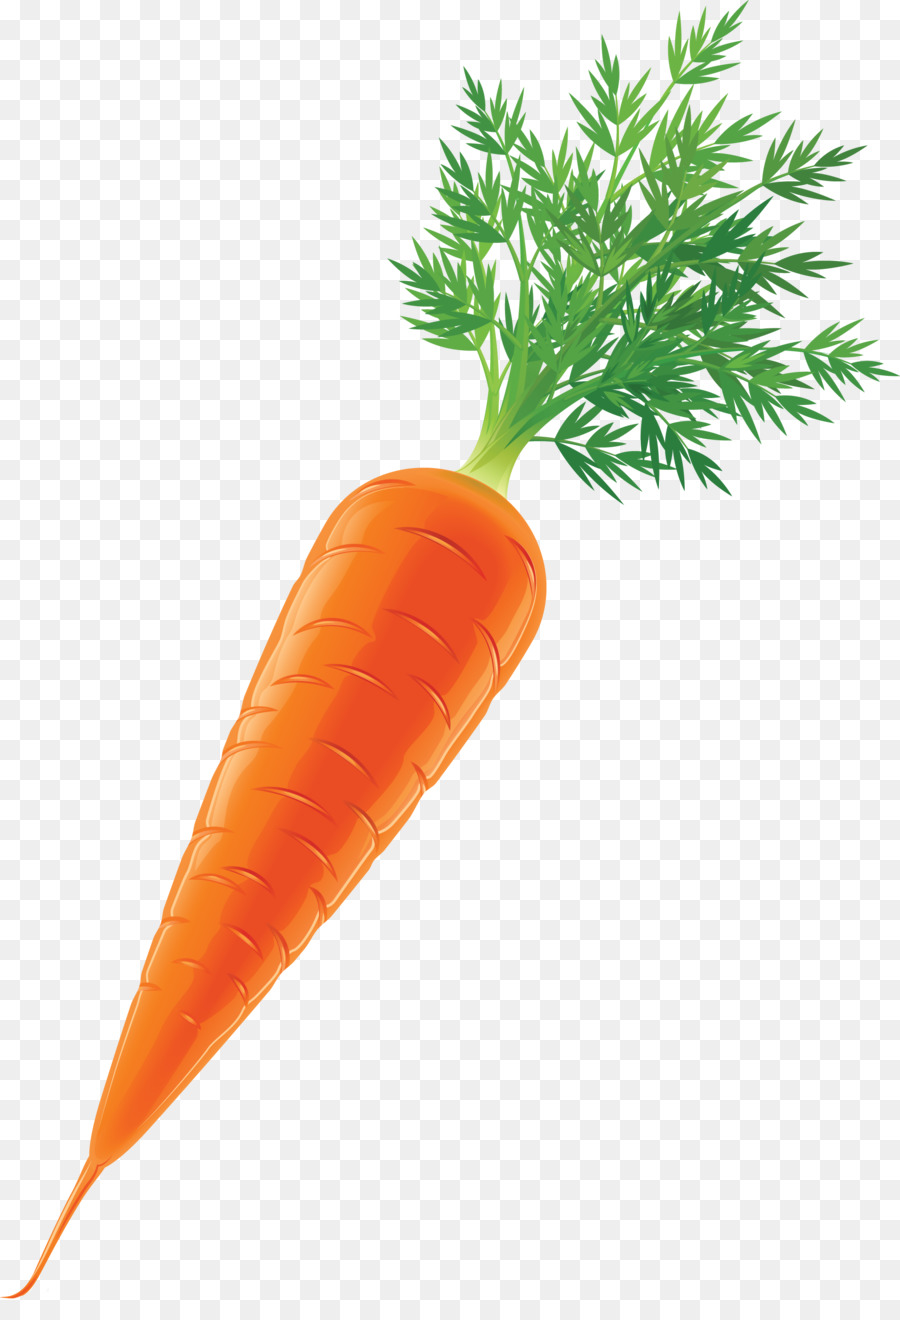 Carrot Vegetable Stock Clip art - carrot png download - 2069*3000 - Free Transparent Carrot png Download.